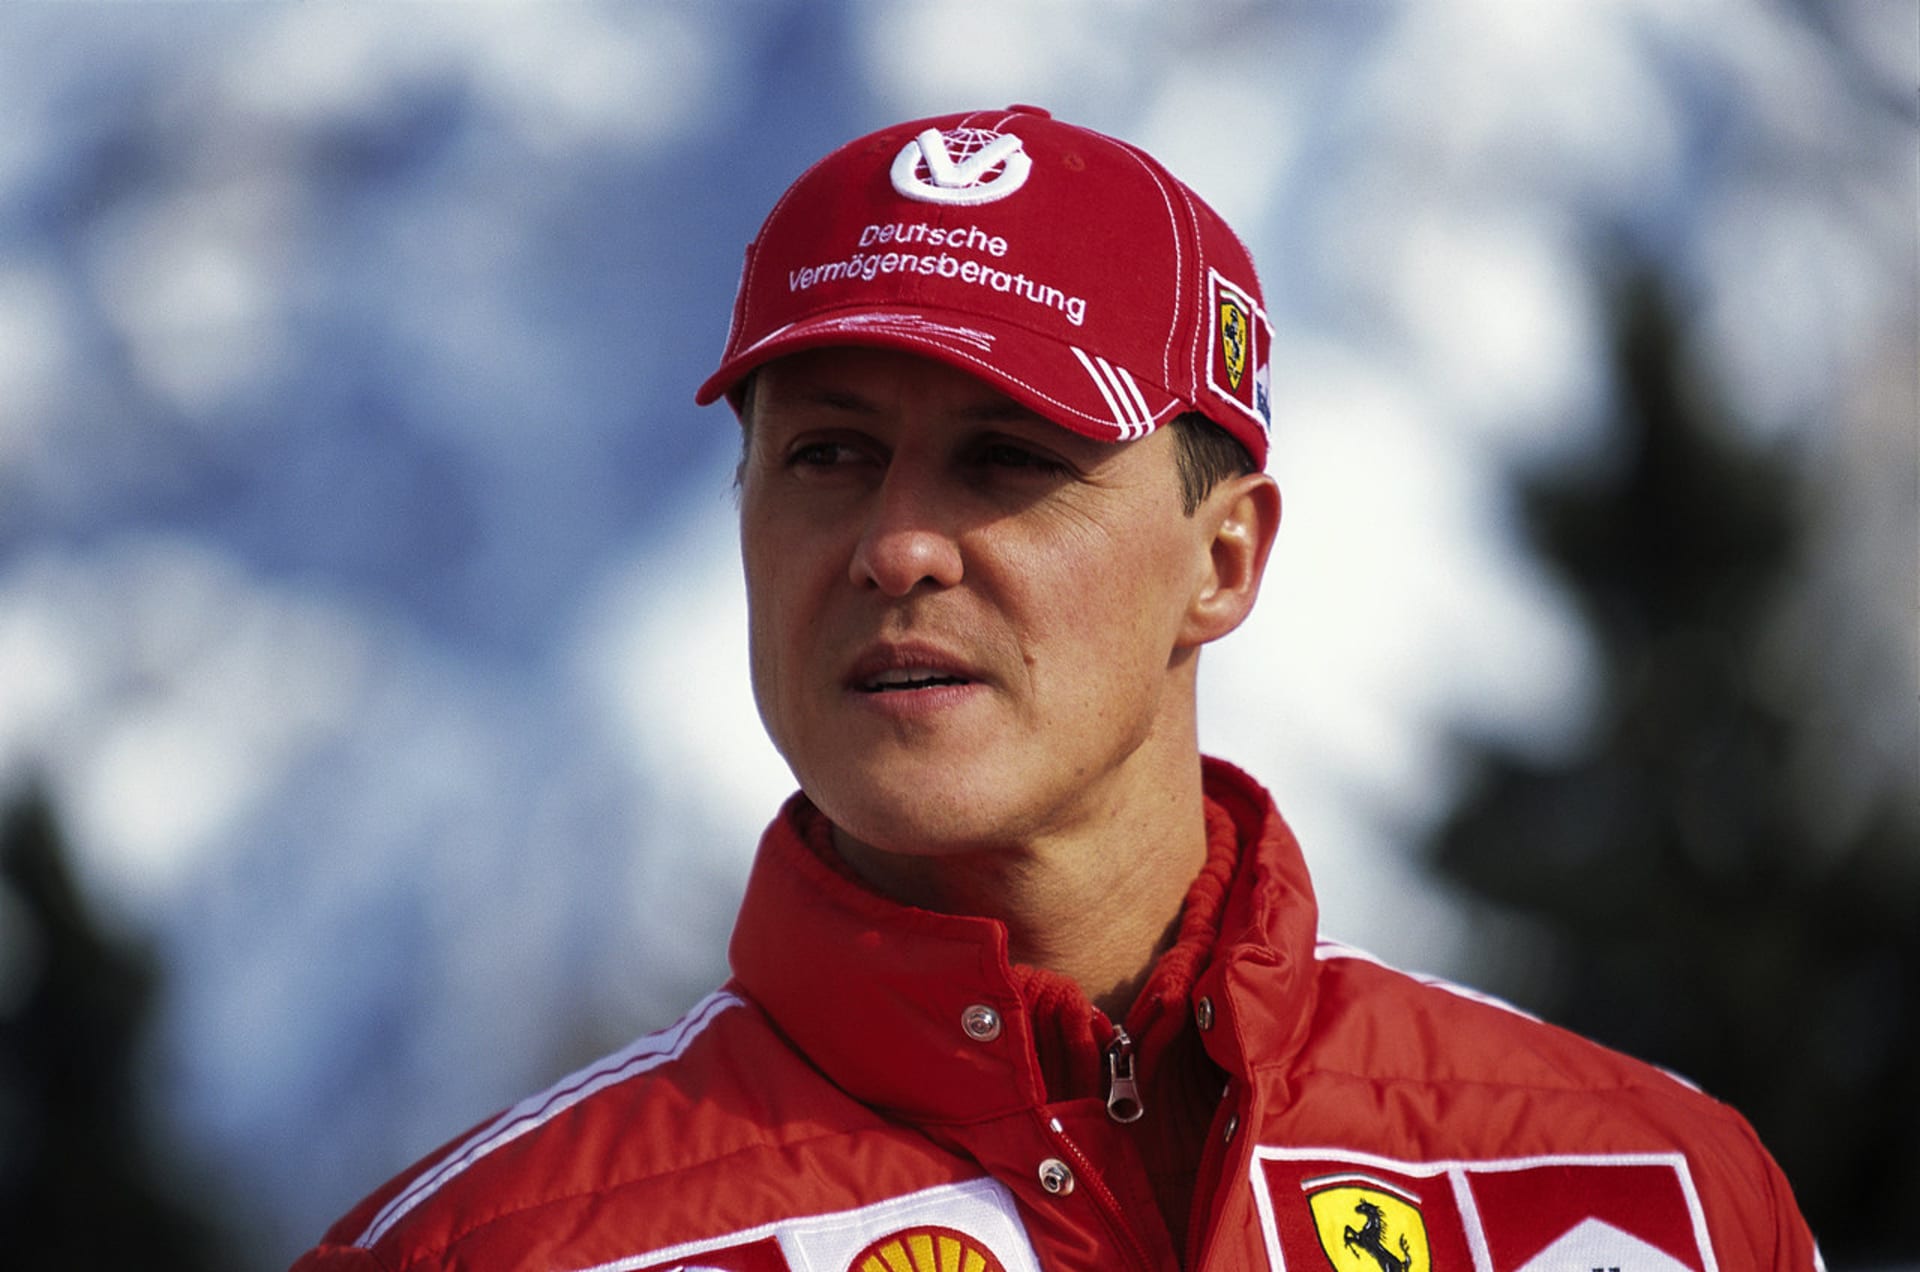 Zdravotní spis Michaela Schumachera podle deníku Bild kdosi ukradl a snaží se ho prodat.